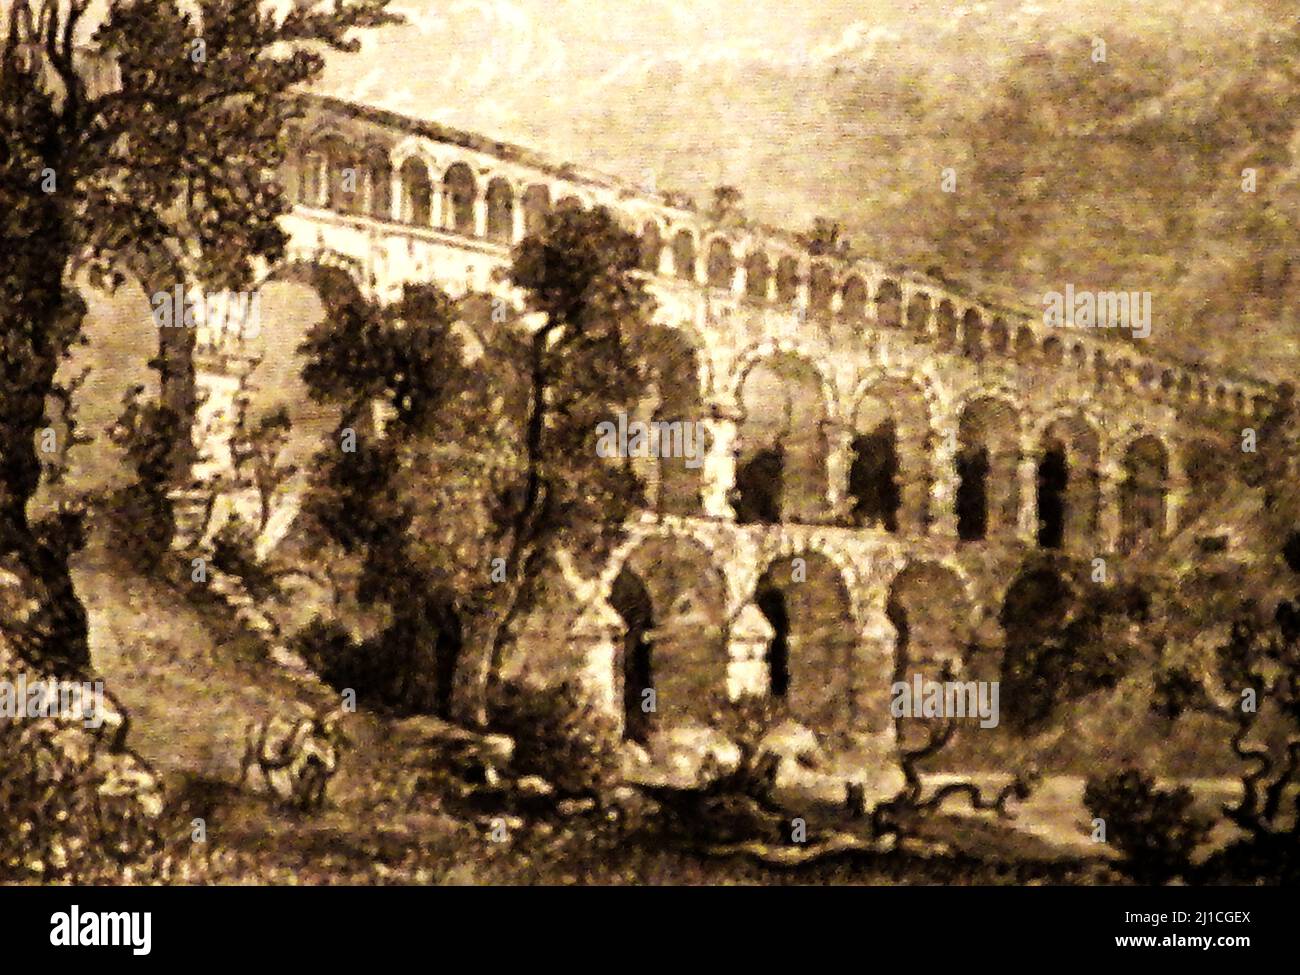 Ein 19.-Jahrhundert-Künstlerbild des Pont du Gard Aquädukts, wie es damals war. Dieses antike römische 48,8 m (160 ft) Aquädukt wurde im ersten Jahrhundert n. Chr. erbaut, um Wasser über die 50 km (31 mi) lange Landschaft zur römischen Kolonie Nemausus (Nimes) zu transportieren. Die Brücke überspannt den Fluss Gardon Stockfoto